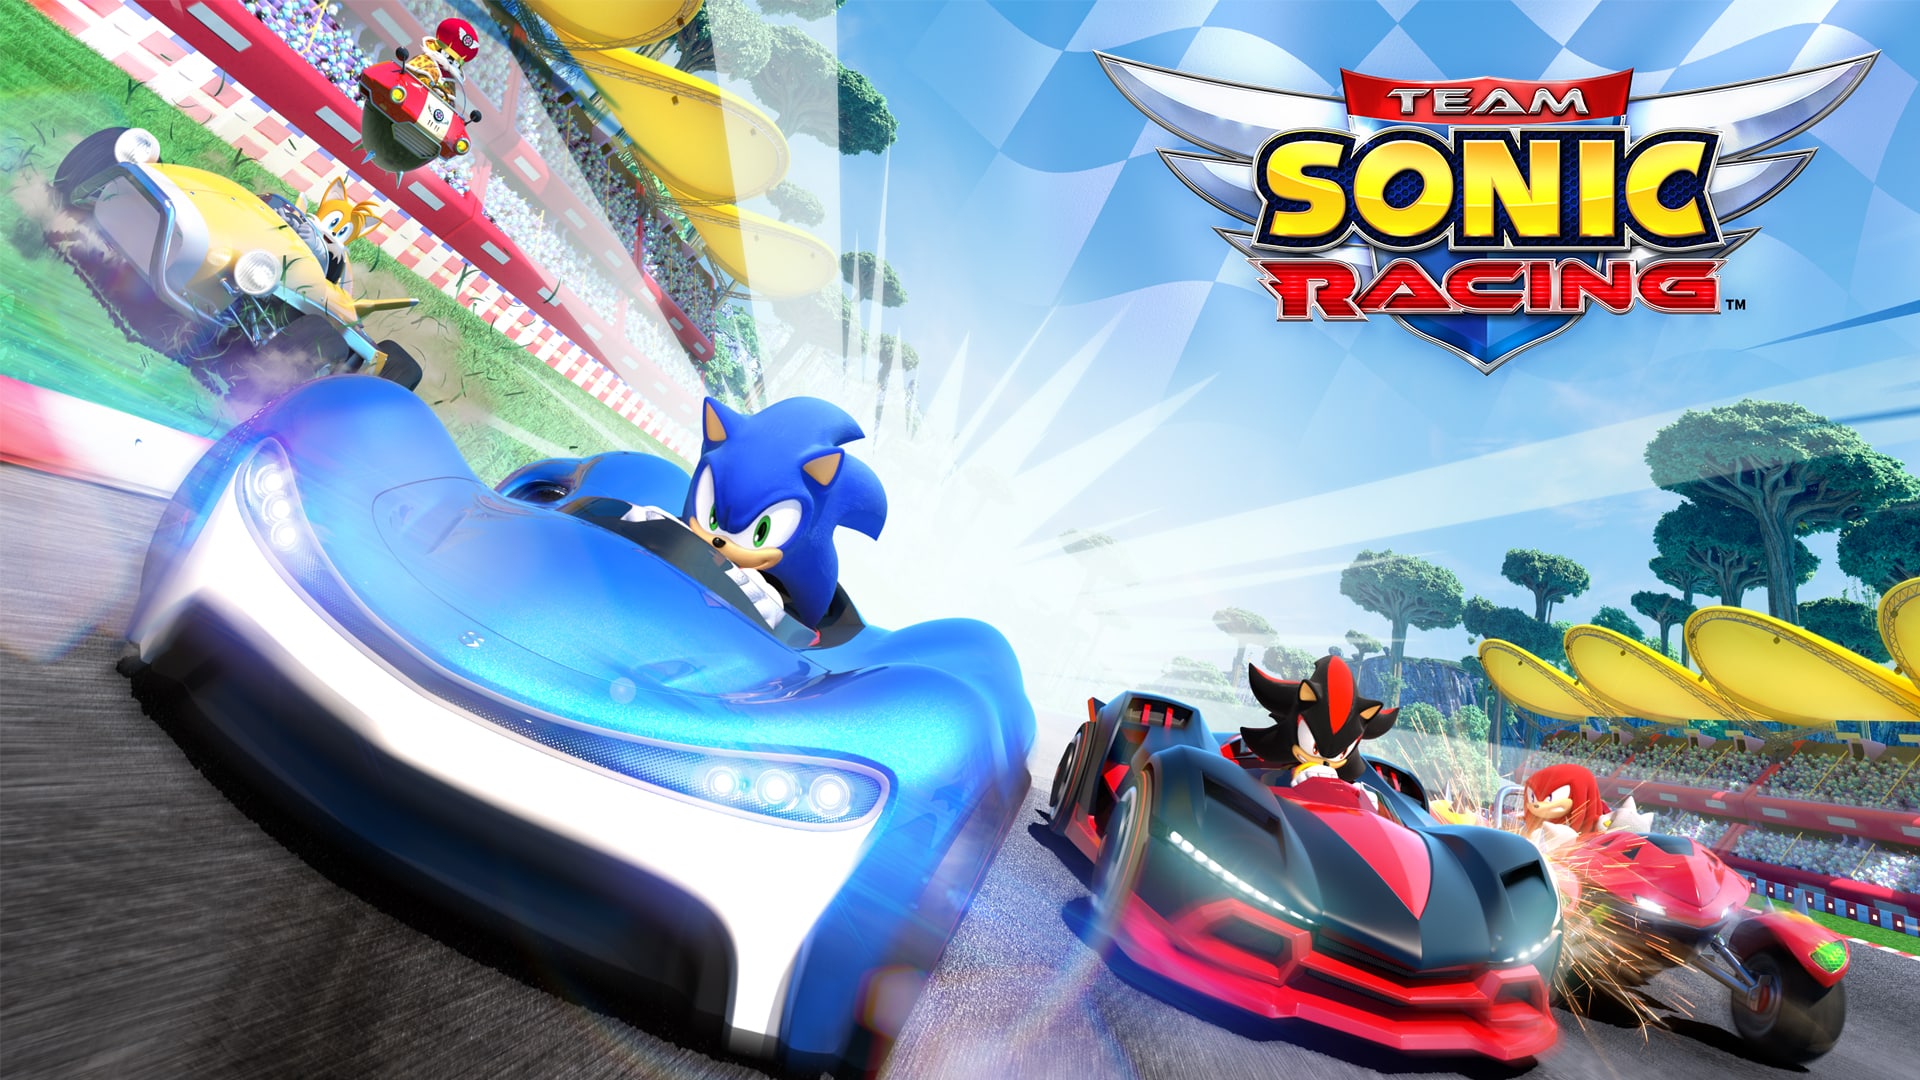 Team Sonic Racing Key Visual